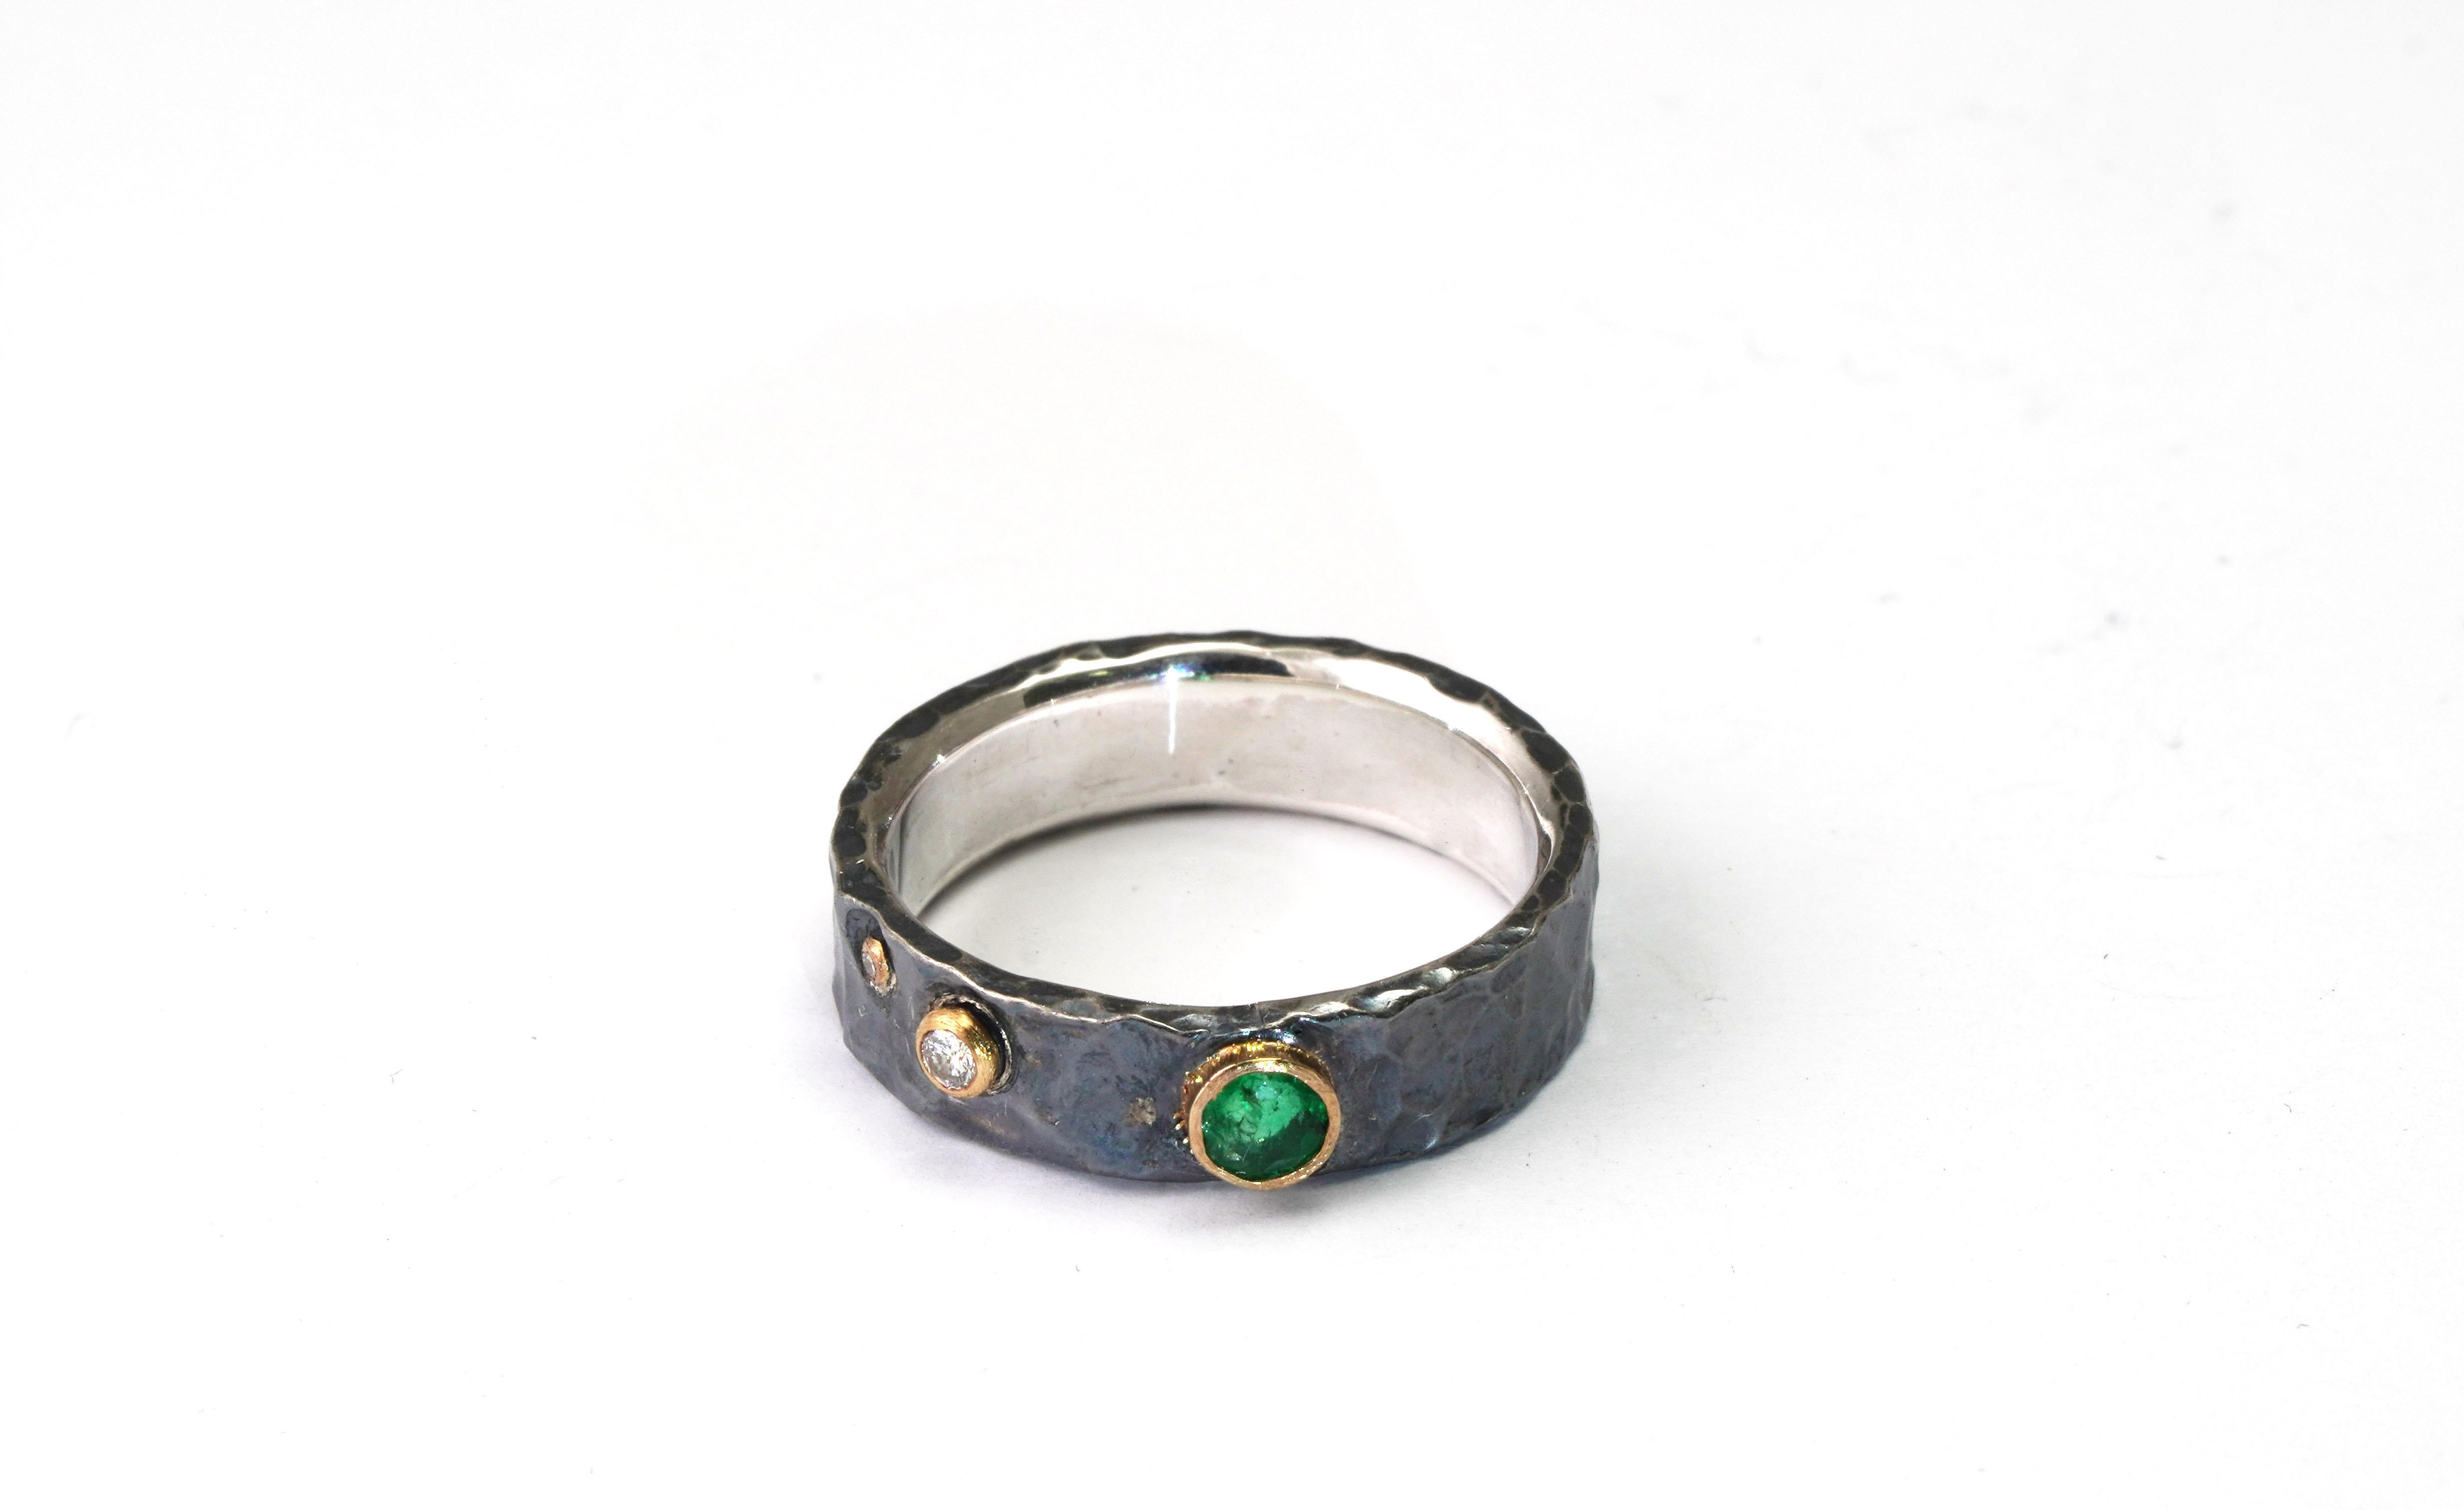 925 Oxidiertes Silber Ring mit Smaragd und Diamanten
(SOLID GOLD)
Gold kt: 22 
Goldfarbe: Gelb
Ringgröße: 5 1/2 US
Gesamtgewicht: 4,03 Gramm

Set mit:
- Smaragd
Schnitt: Gemischt
Gesamtgewicht: 0,15 Karat
Farbe: Grün
- Diamanten
Schliff: